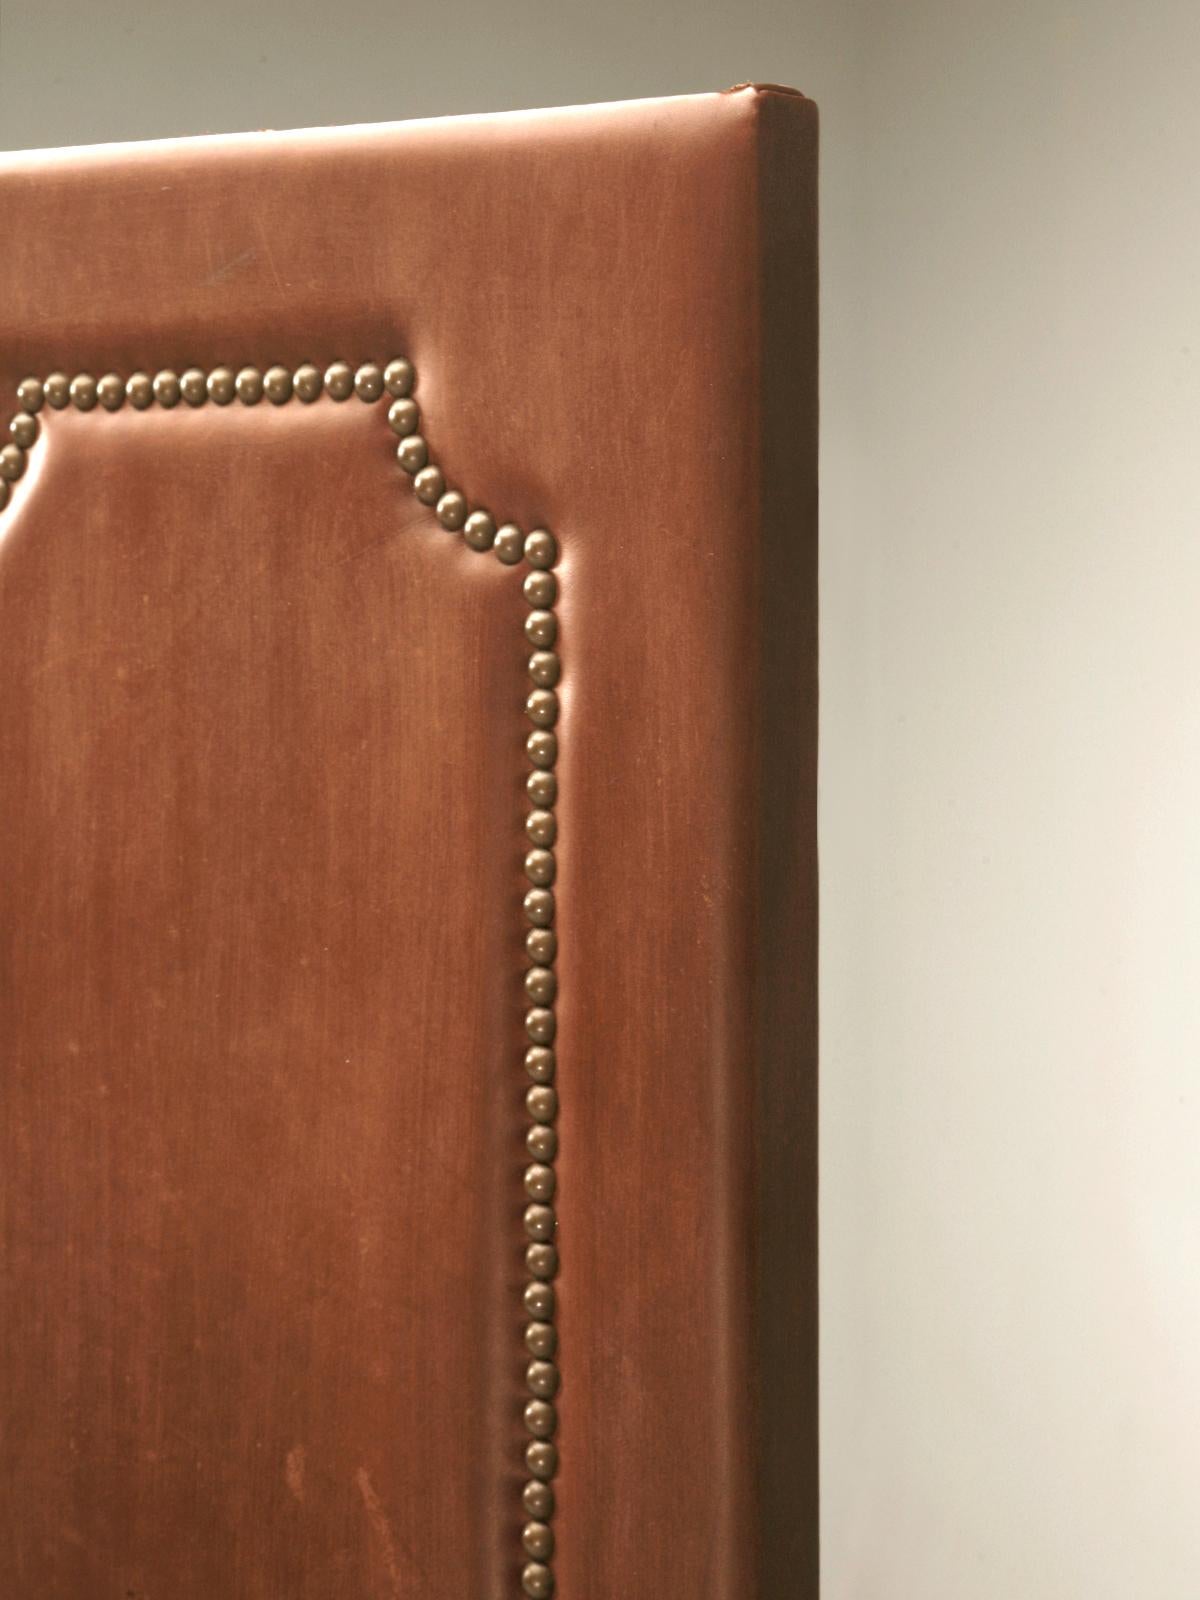 Vier-Panel-Faltwand in Distressed-Leder oder als Raumteiler, mit zeitlosem Bronze-Nagel-Design. Der handgefertigte Massivholzrahmen, der mit einem unverwechselbaren, gealterten Leder bespannt ist, und das zeitlose Design mit 100 einzelnen Nägeln